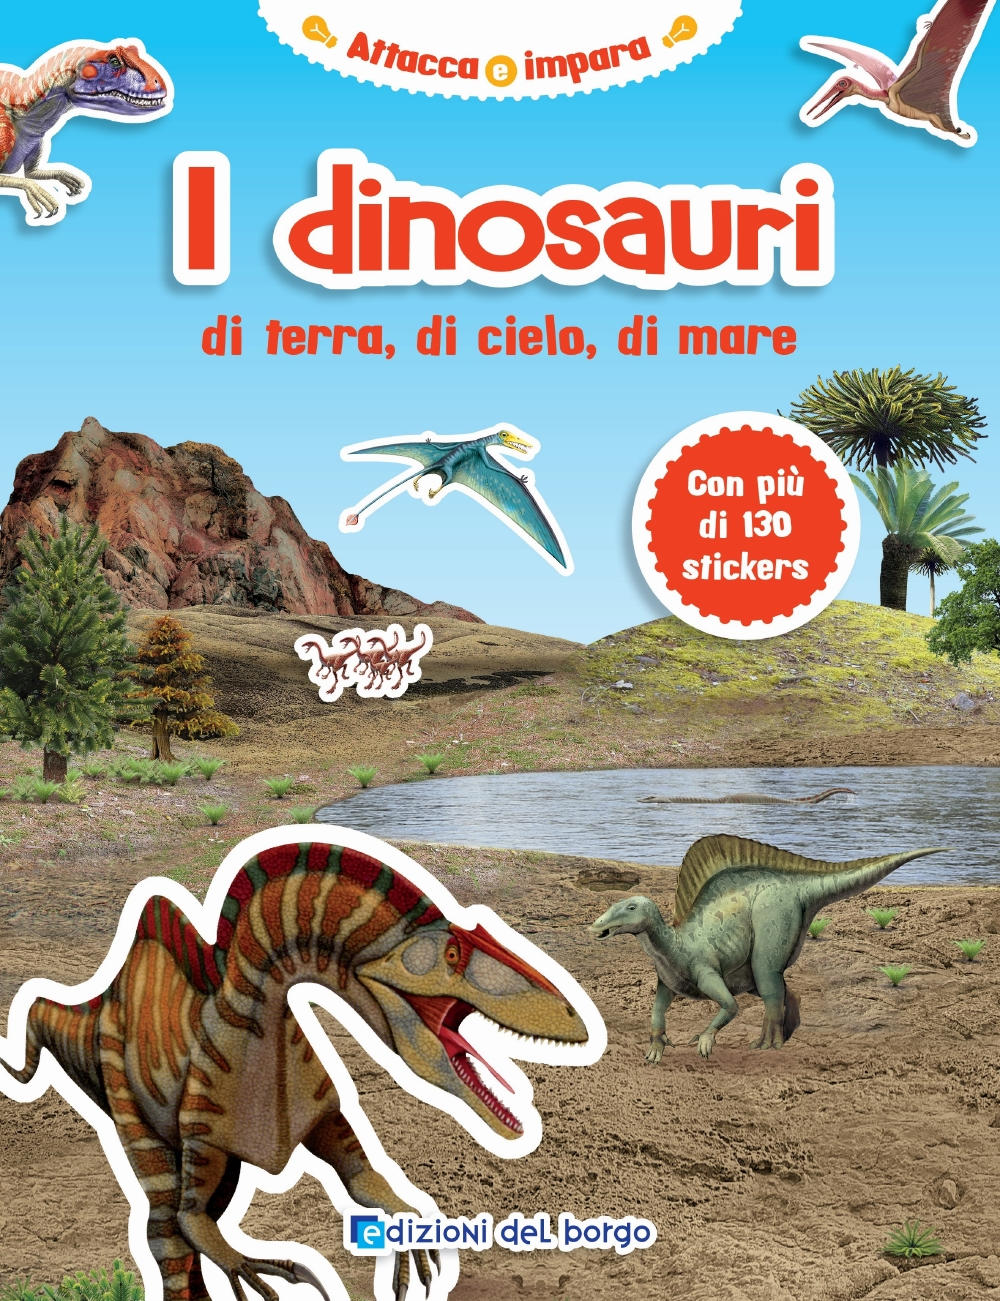 I Dinosauri. di terra, di cielo, di mare